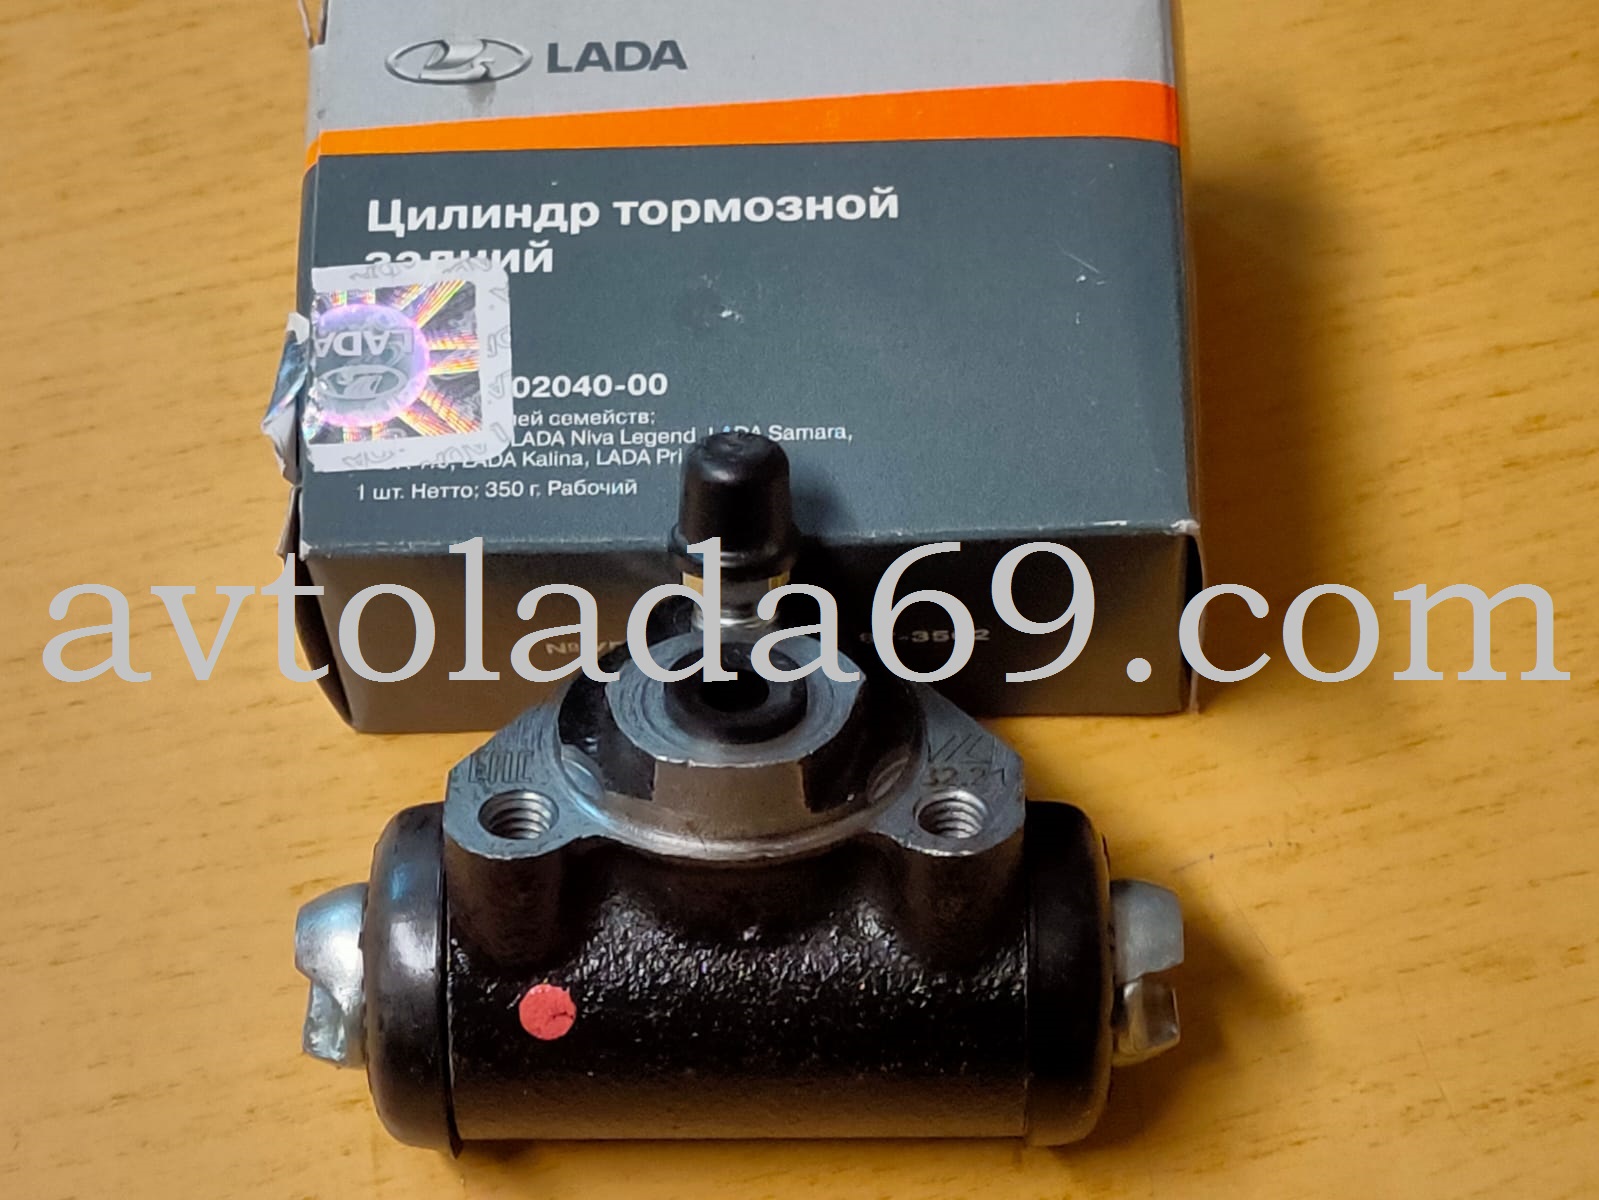 Цилиндр задний тормозной 21050-3502040-00 ВИС (LADA)